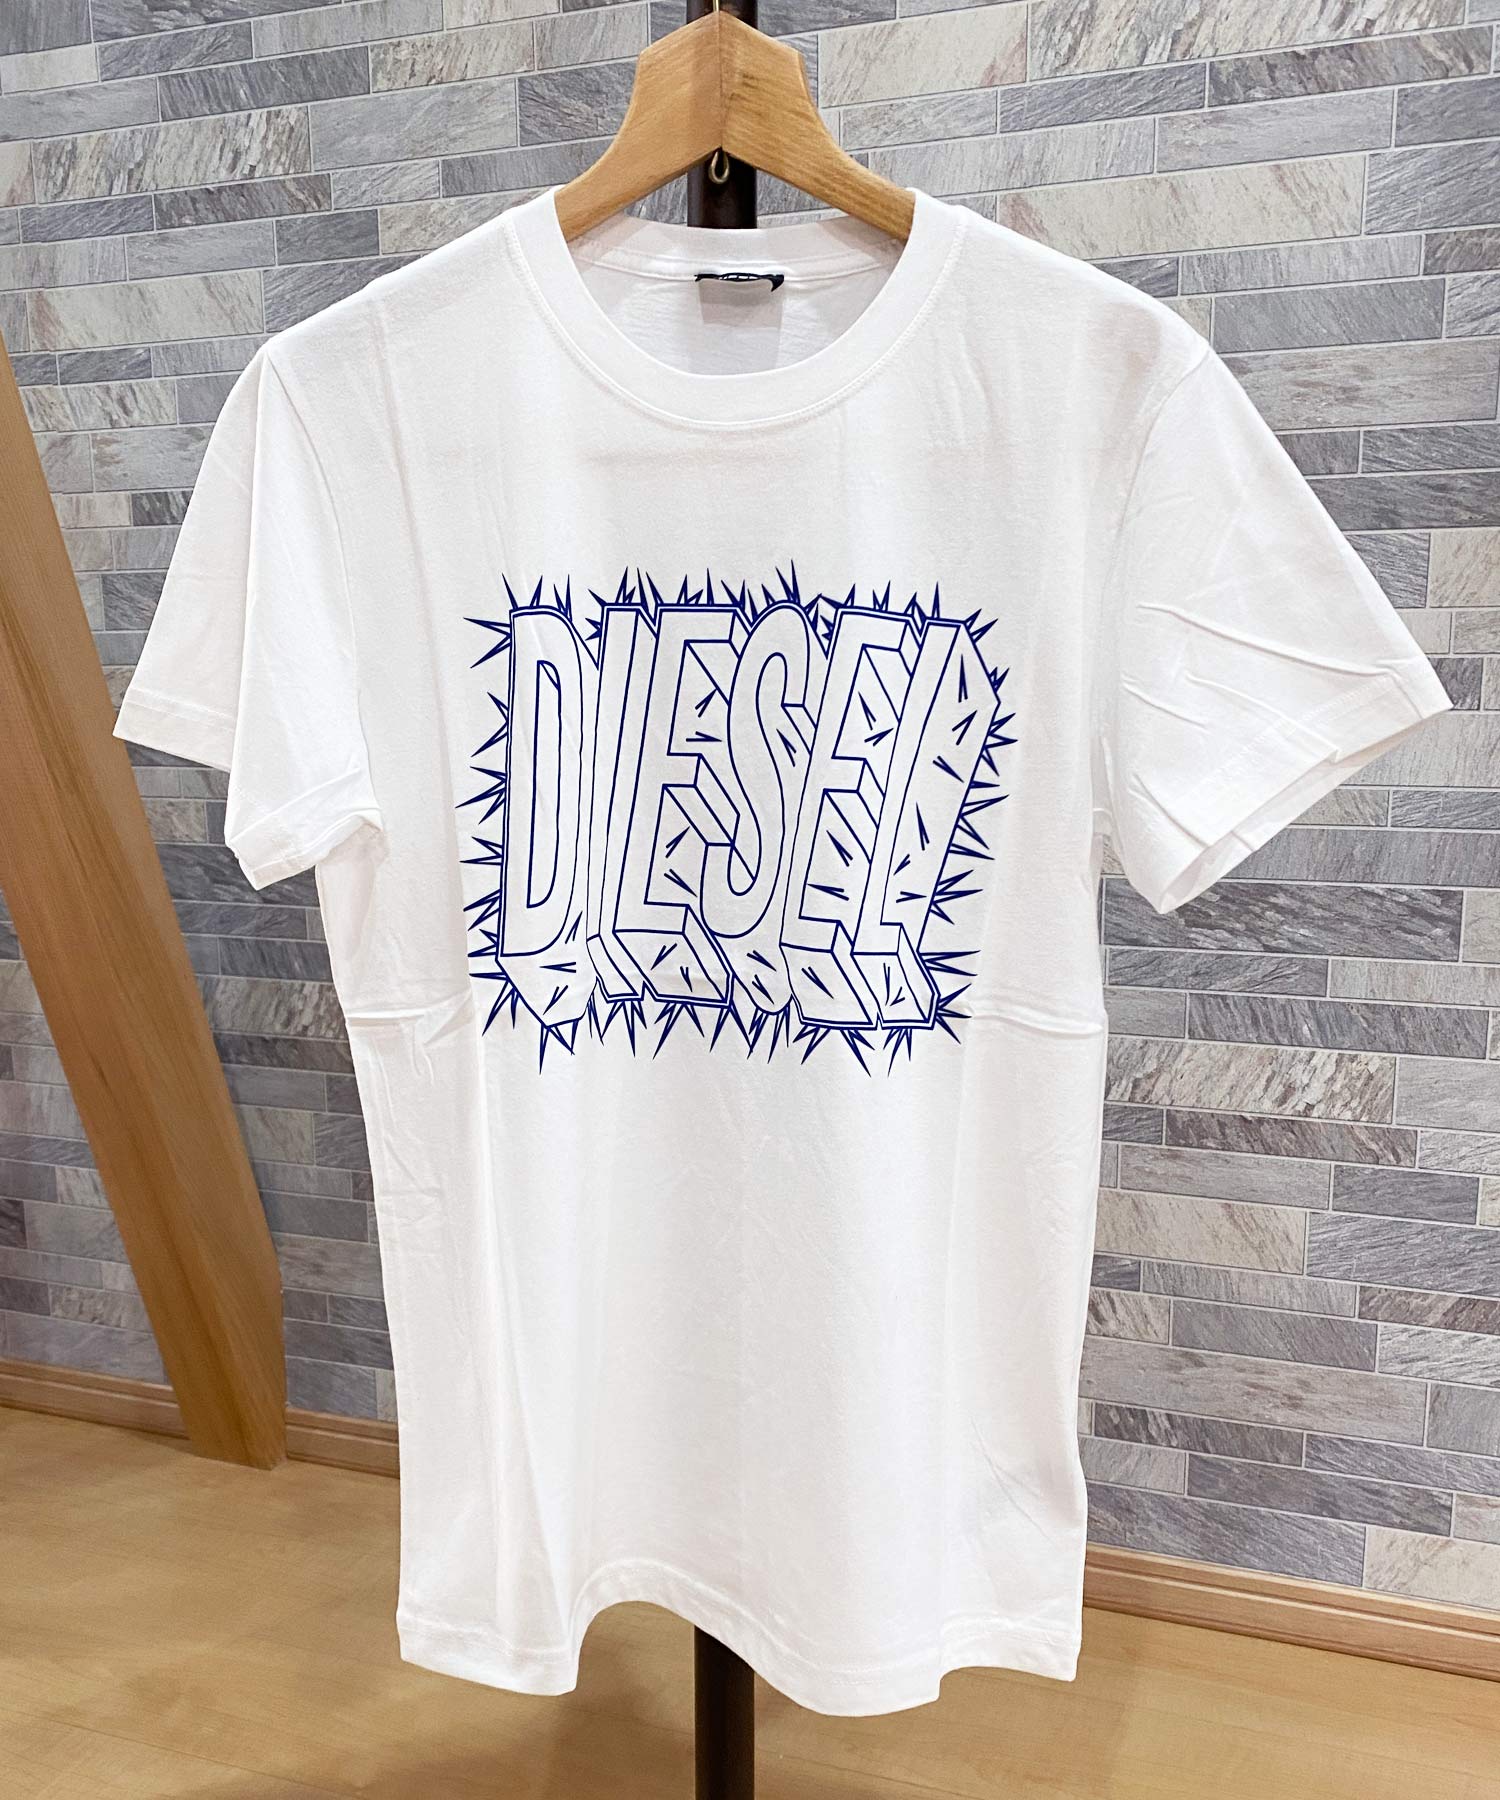 【新品未使用品】DIESEL T-DIEGO-S1 Tシャツ L ②